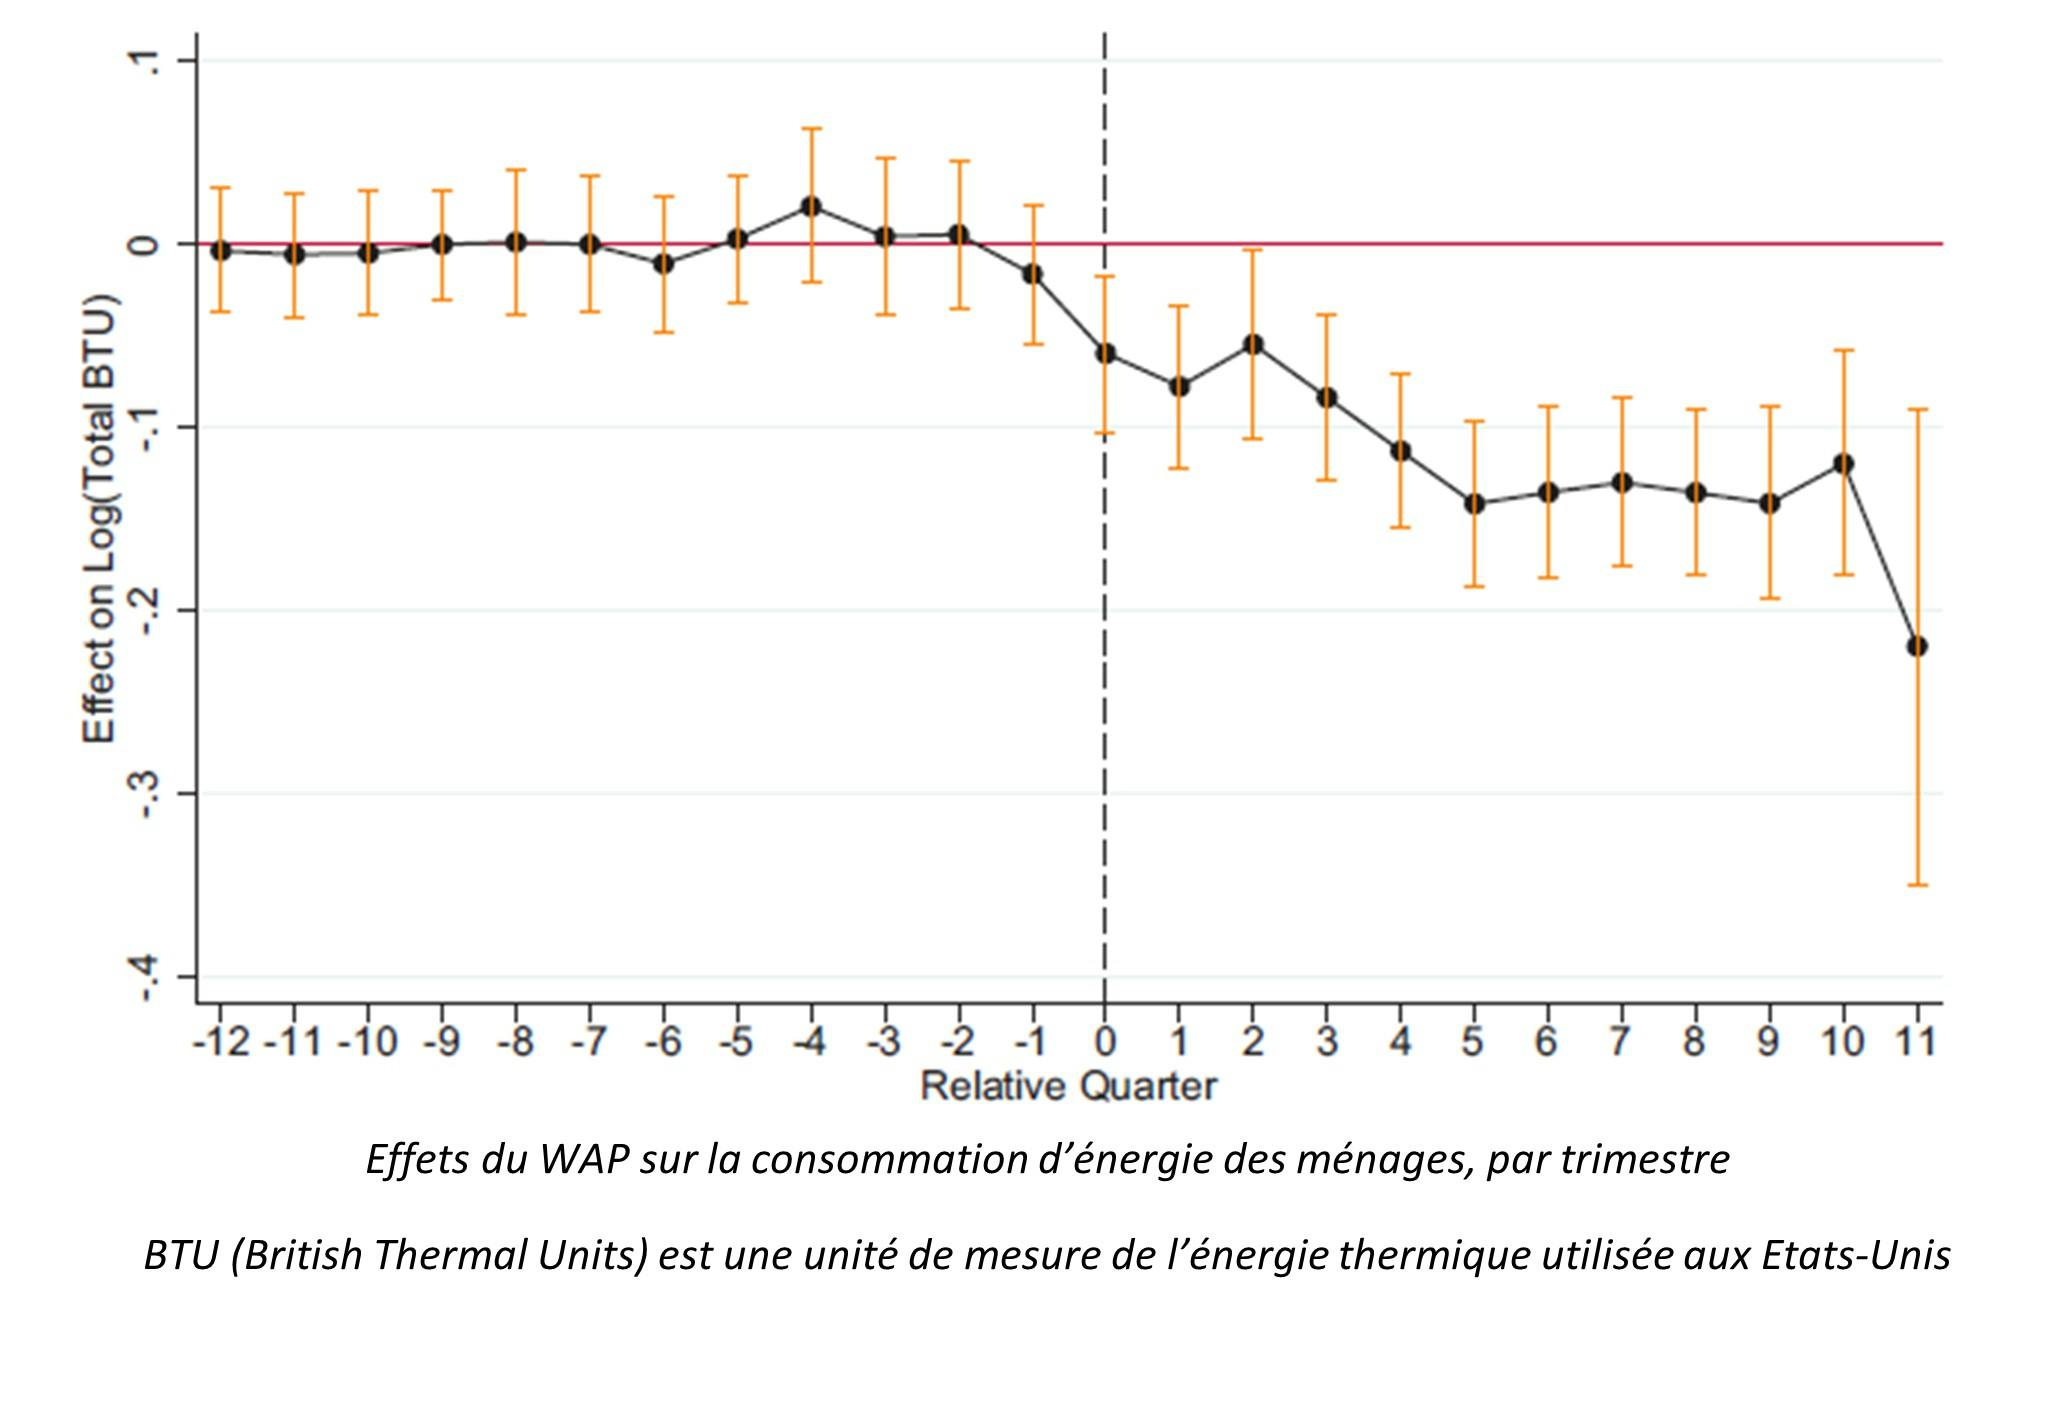 Effets du WAP sur la consommation d'énergie des ménages, pas trimestre